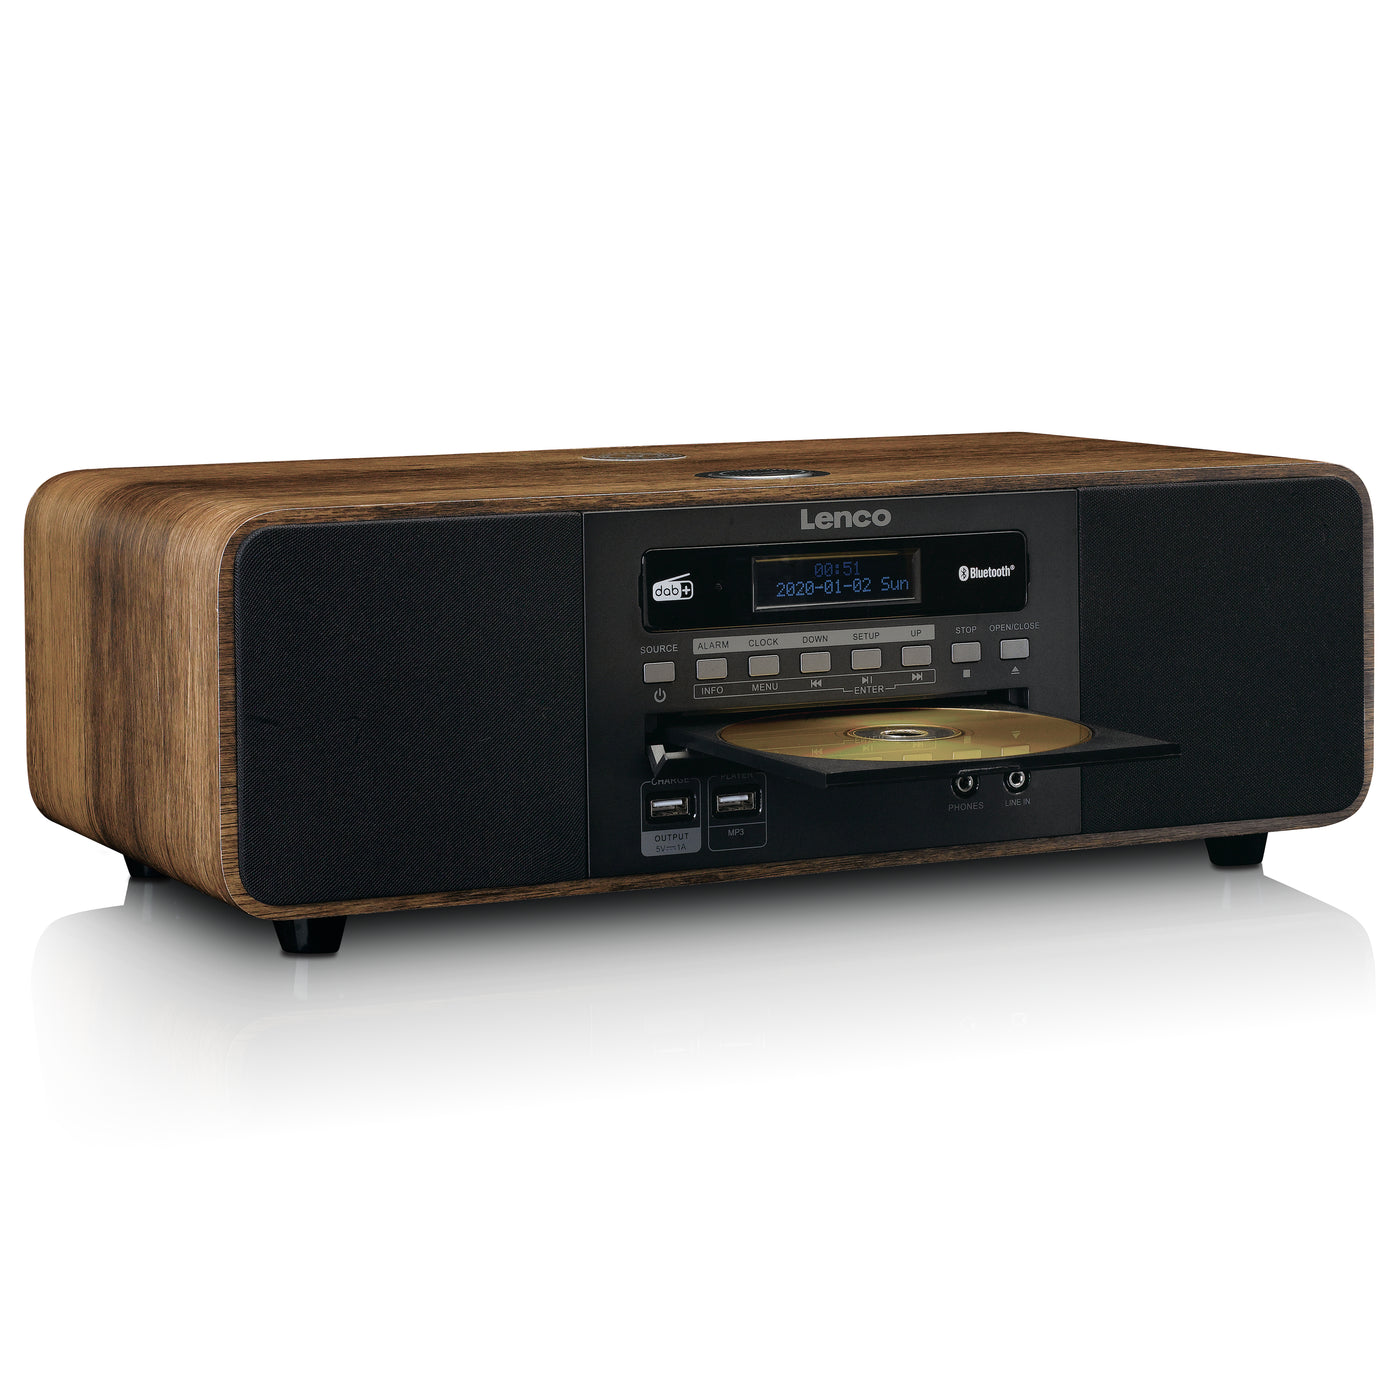 LENCO DAR-051WD - Stereo FM CD, DAB+/ Lenco-Catalog Bluetooth®, radio, 2 – USB, QI and